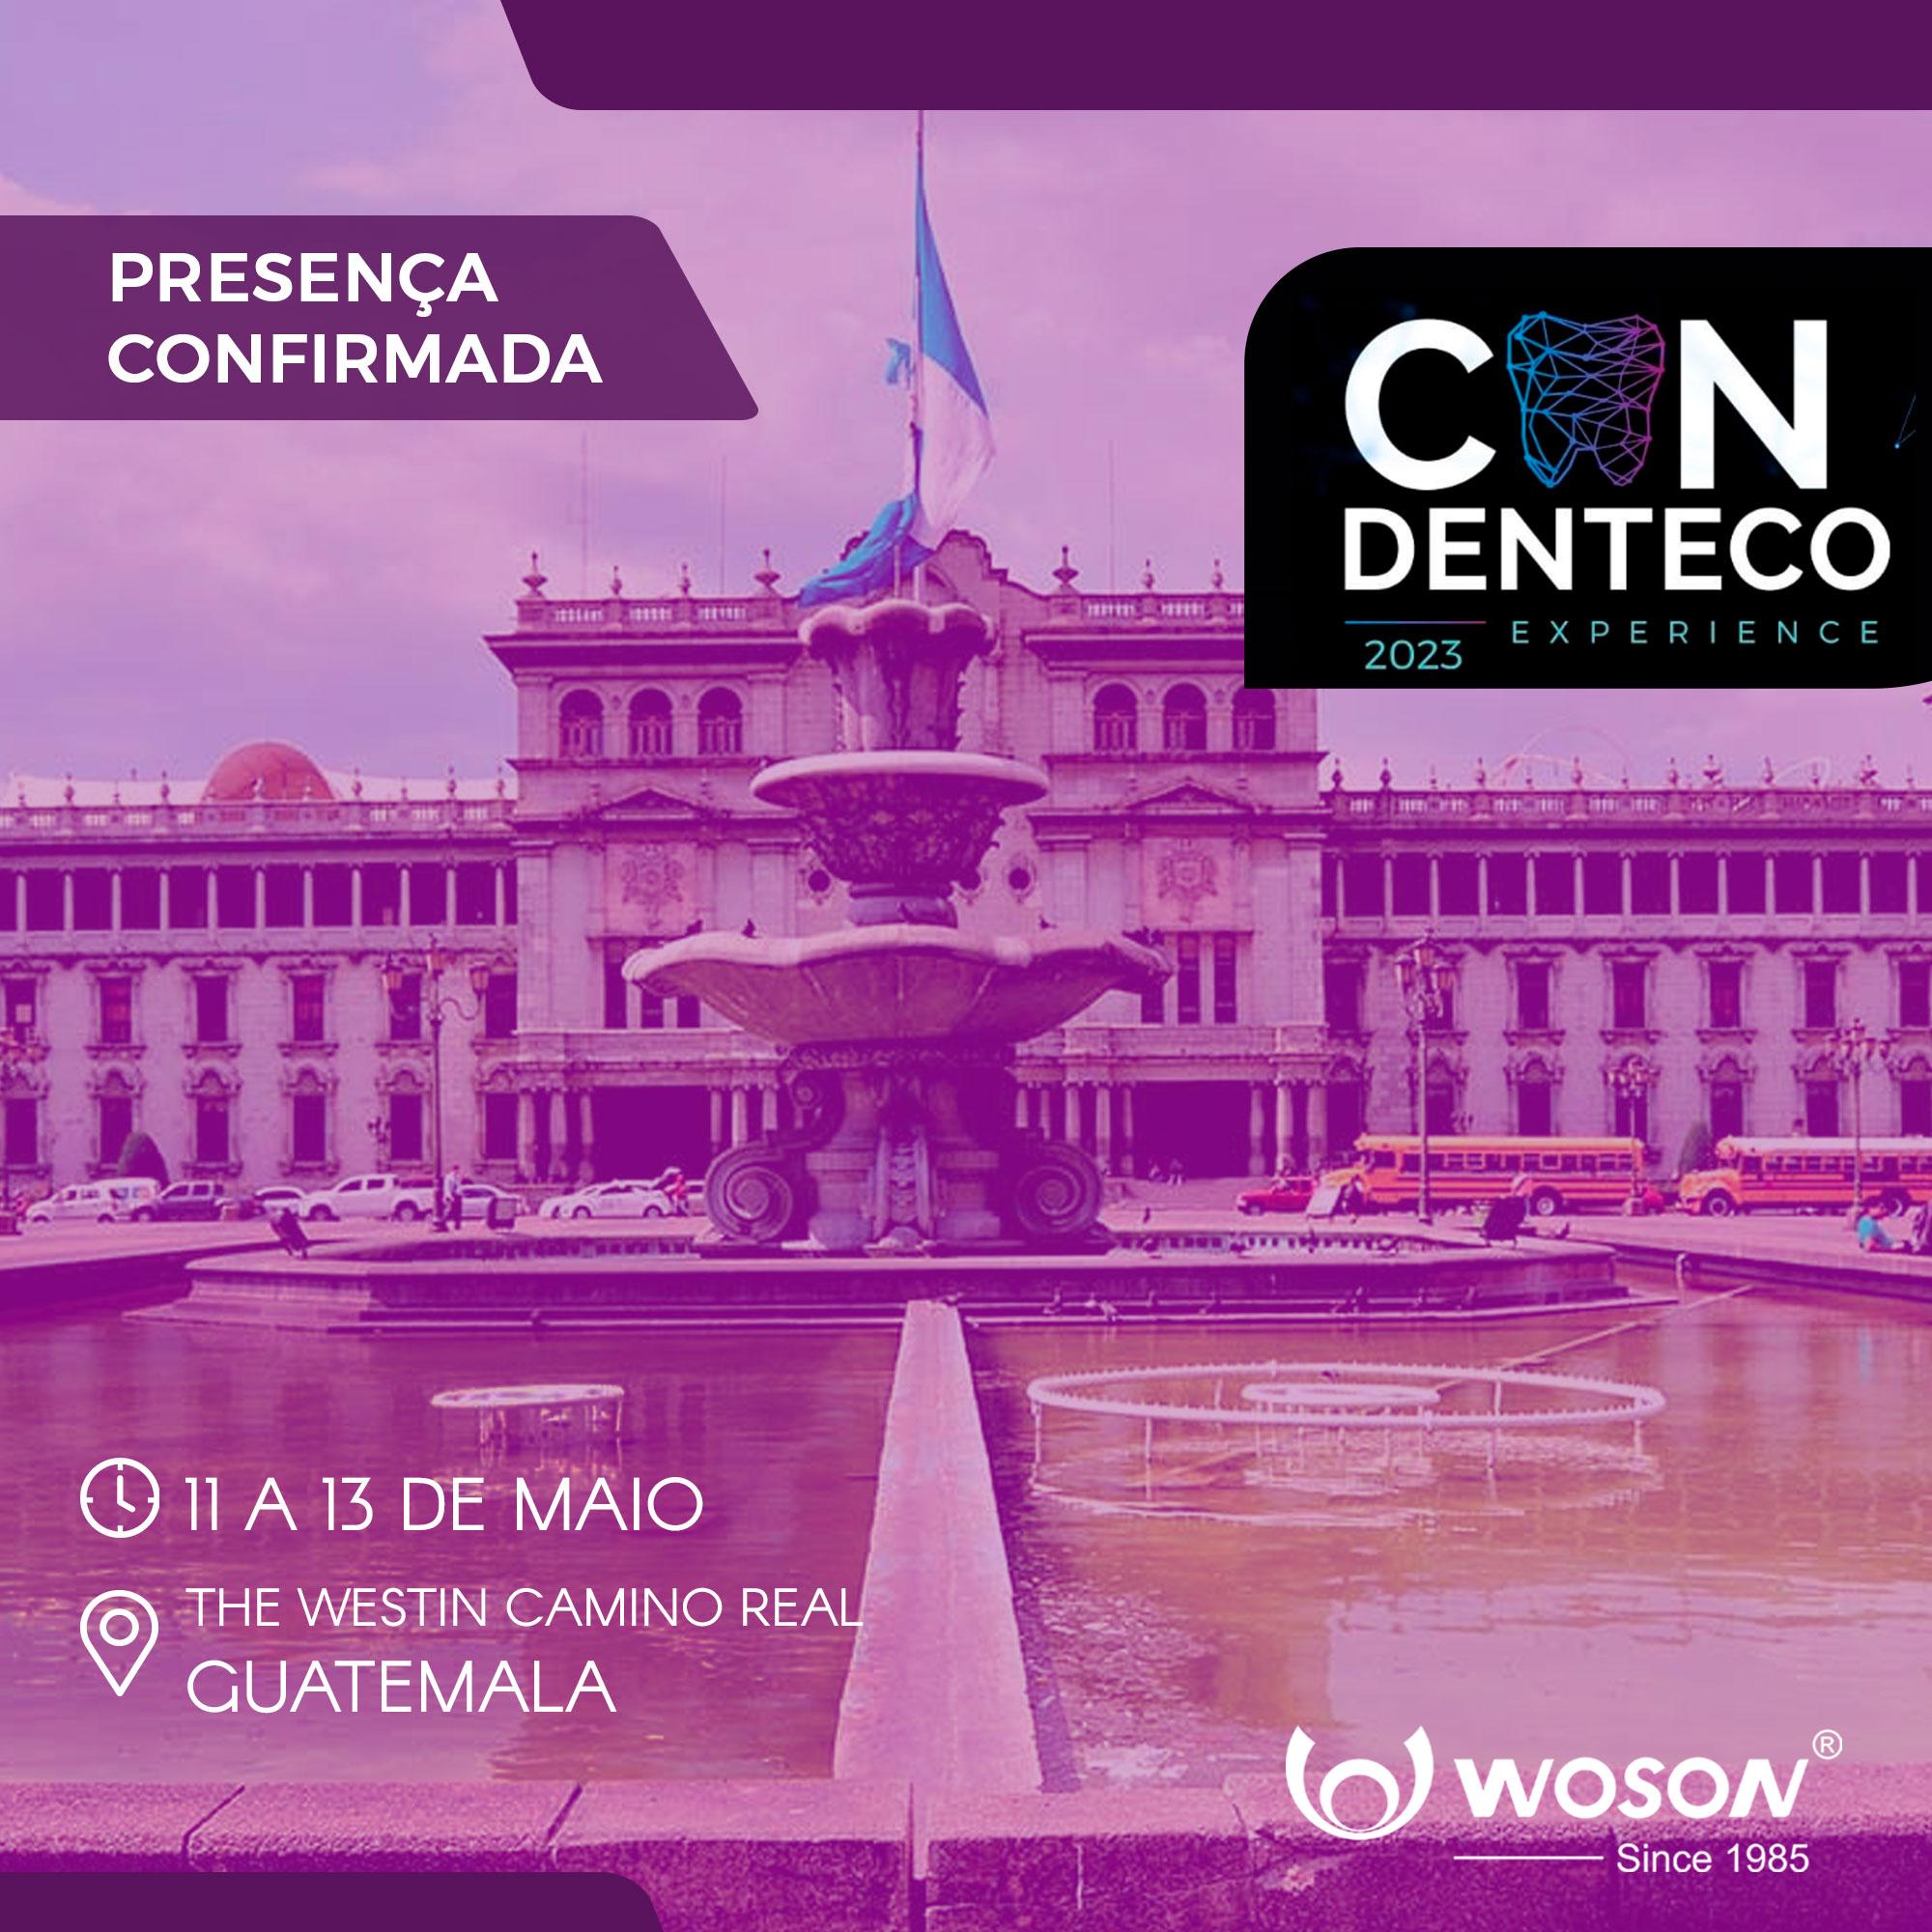 WOSON E DENTECO PARTICIPAM DO CONDENTECO EM MAIO DE 2023 NA GUATEMALA 